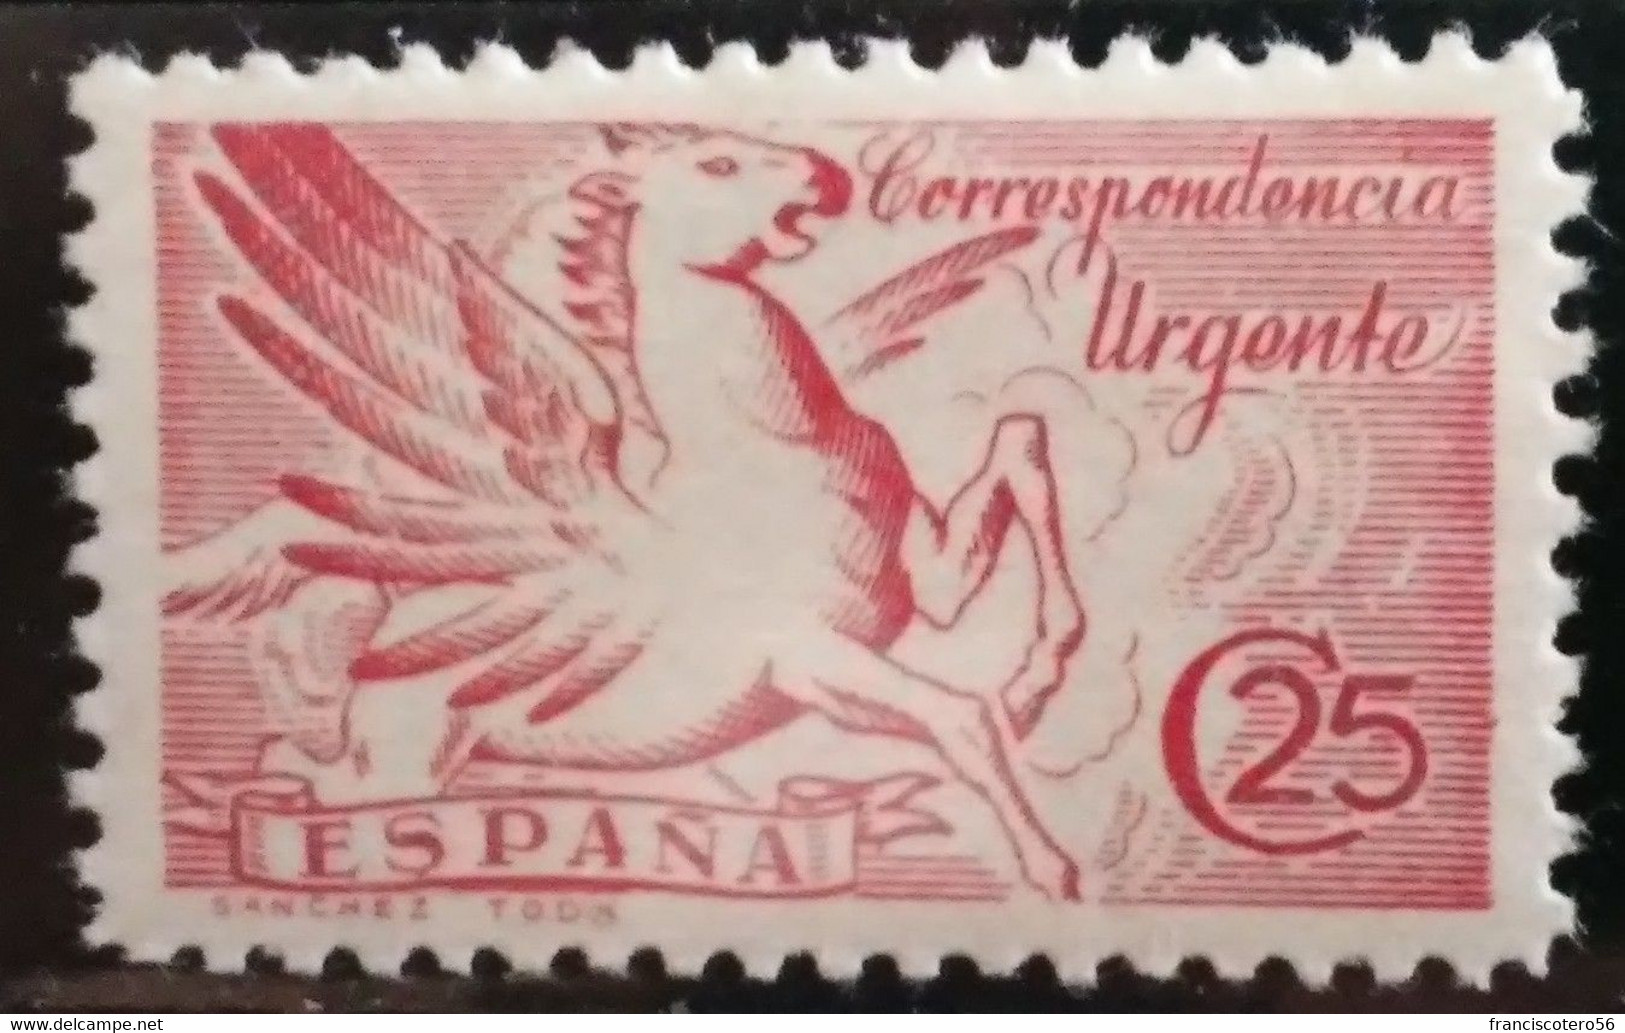 España: Año. 1939 - Estado - Español. Urgente Con El Apellido Del Grabador - (Sánchez Toda). - Special Delivery